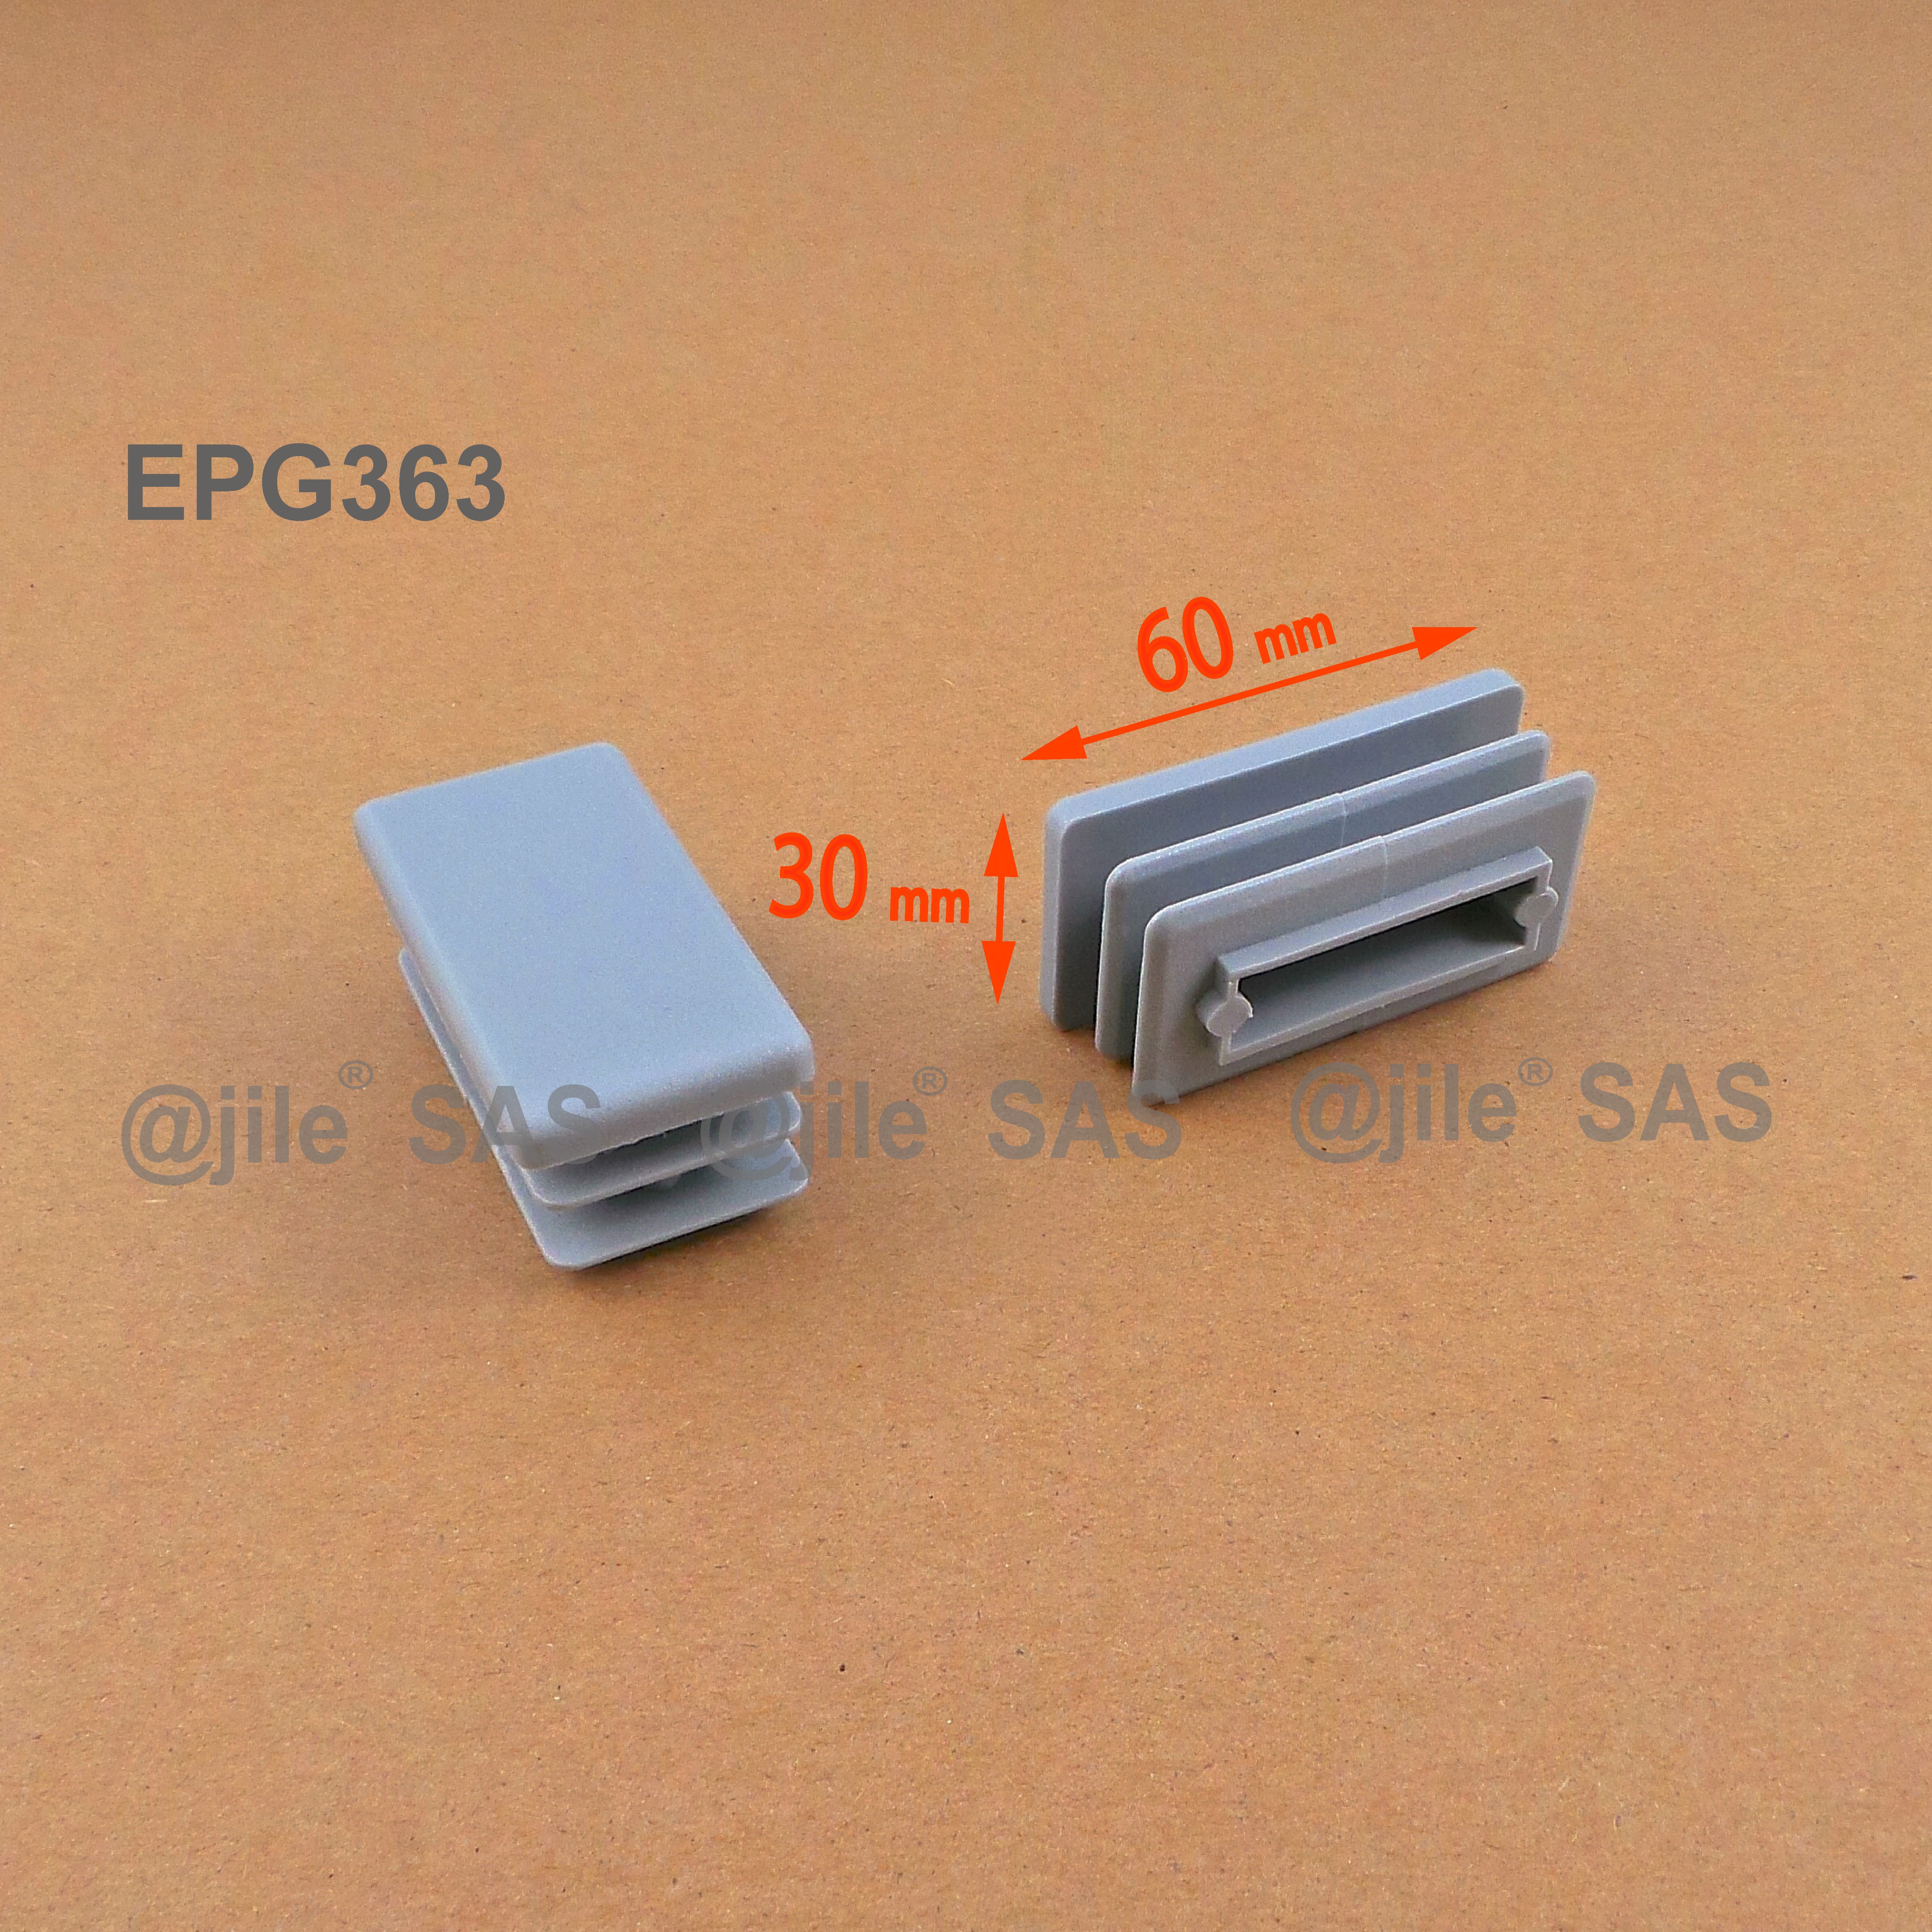 Embout à lamelles rectangulaire pour tubes 60 x 30 mm GRIS 4 pièces EPG363-M ajile 